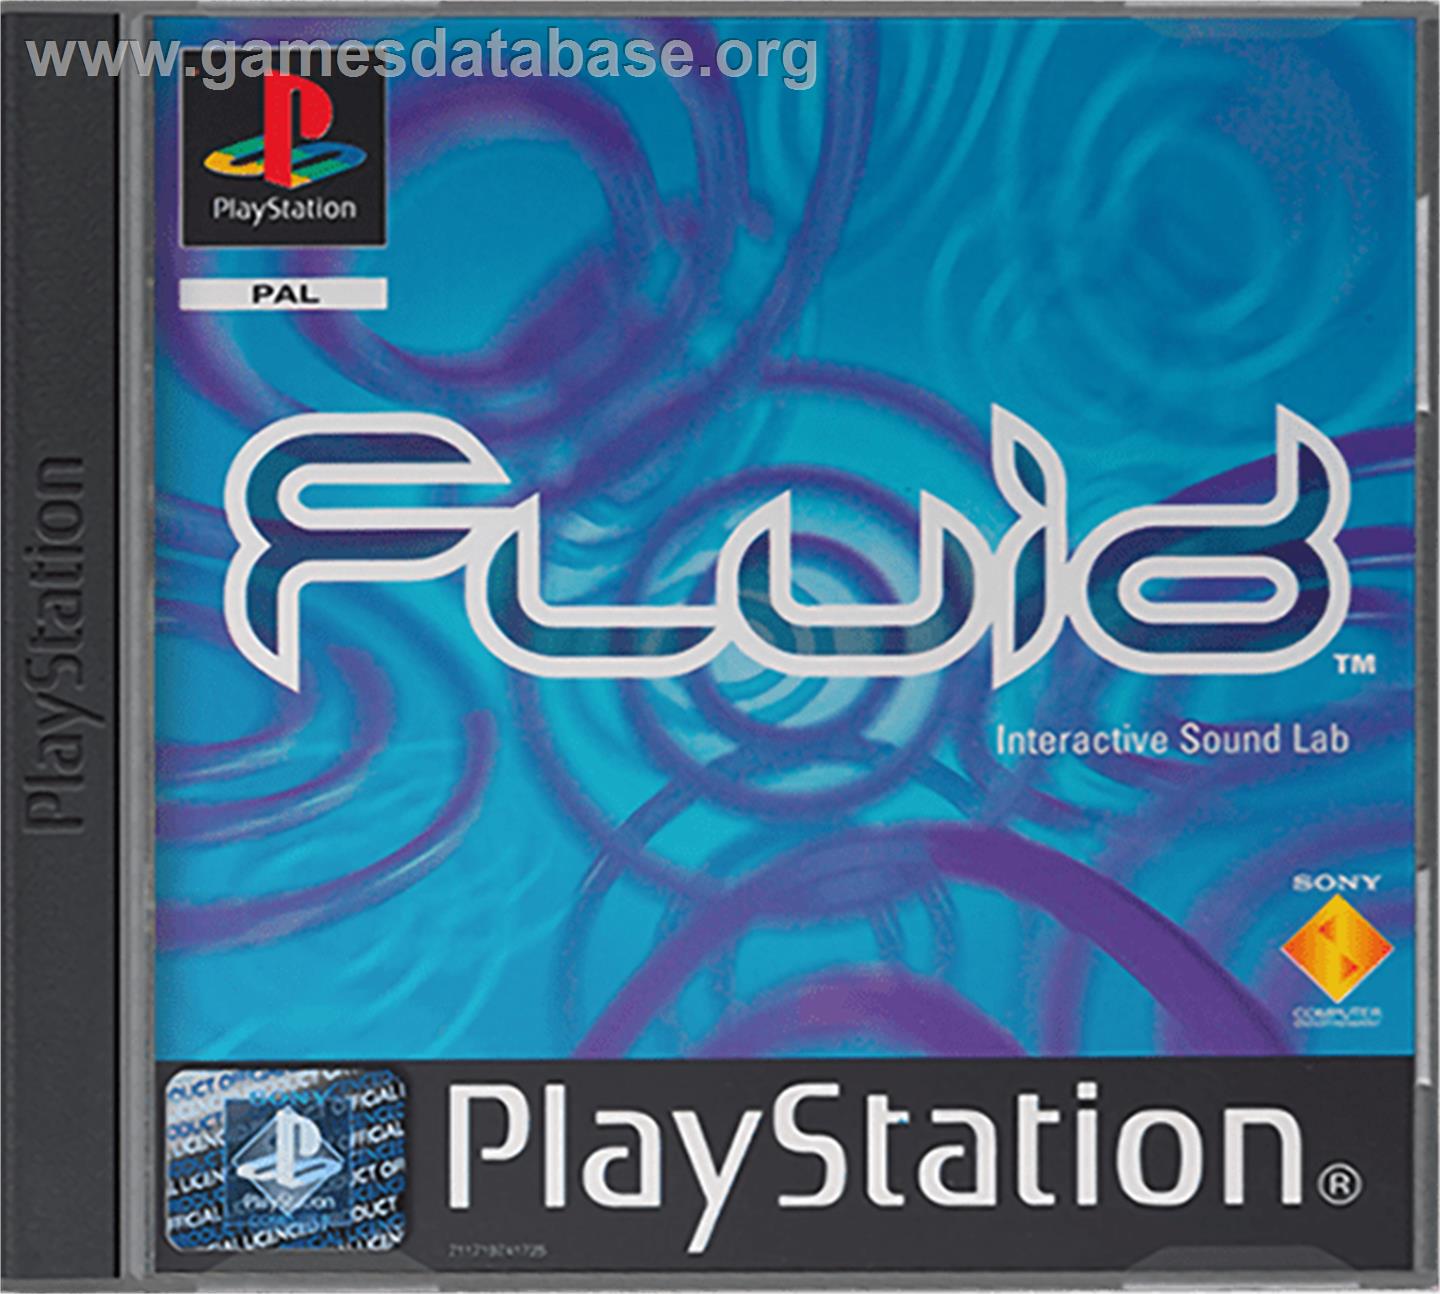 Fluid - Sony Playstation - Artwork - Box